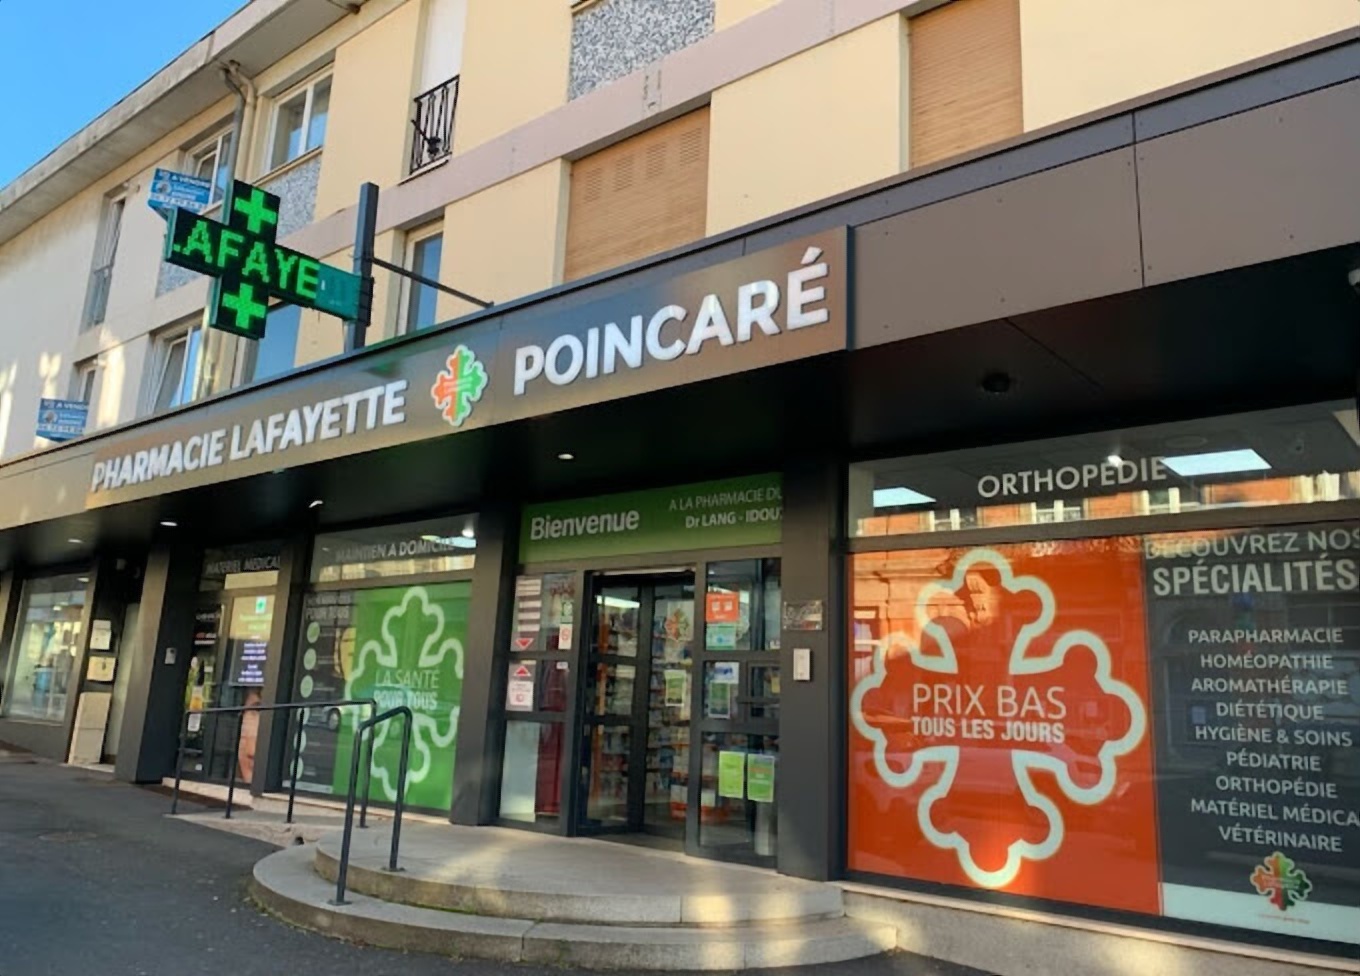 Magasin Pharmacie Lafayette Poincaré - Morhange (57340) Visuel 3